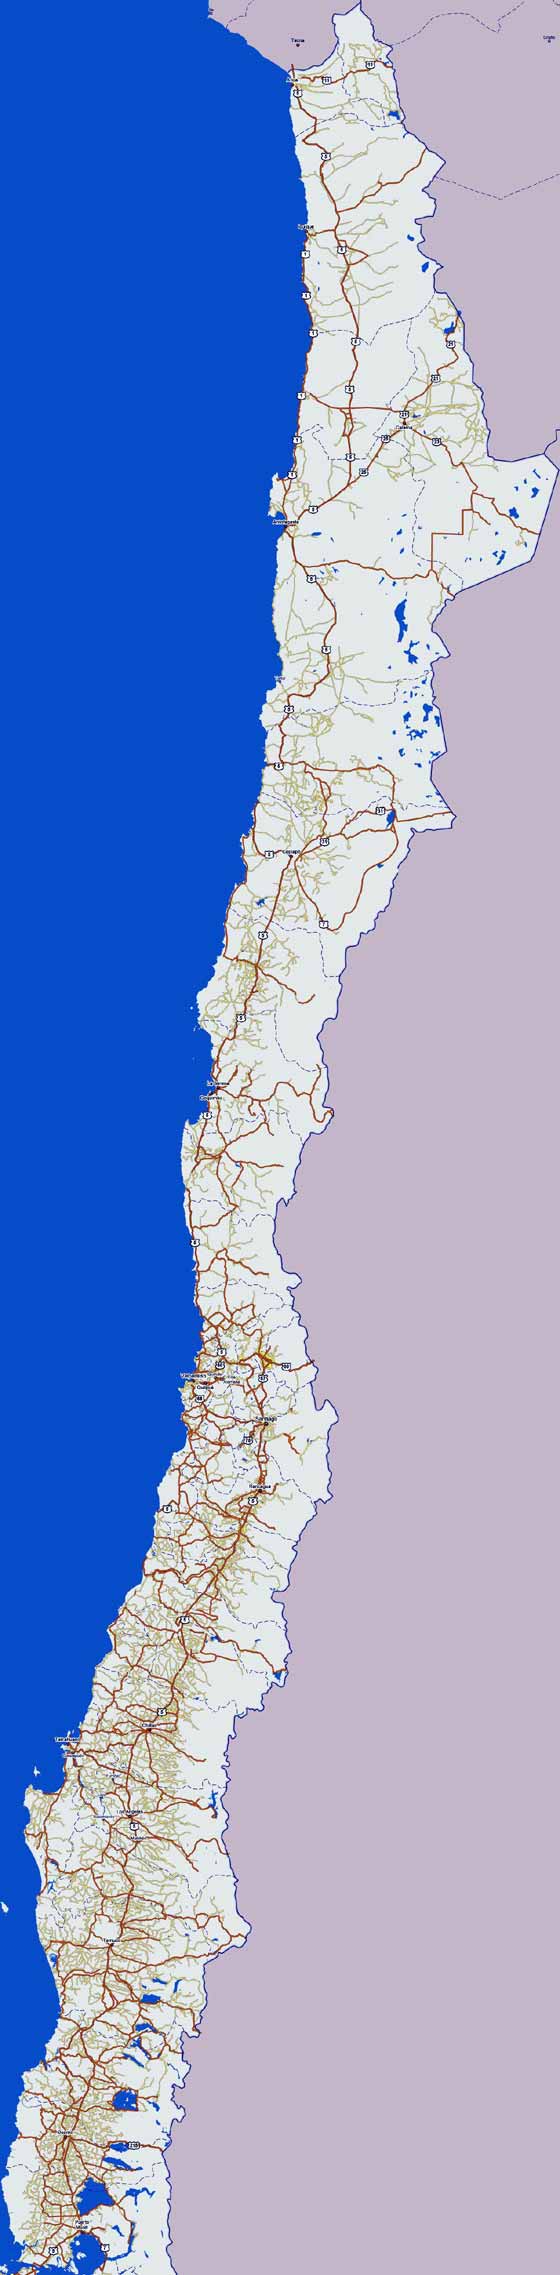 carte de Chili